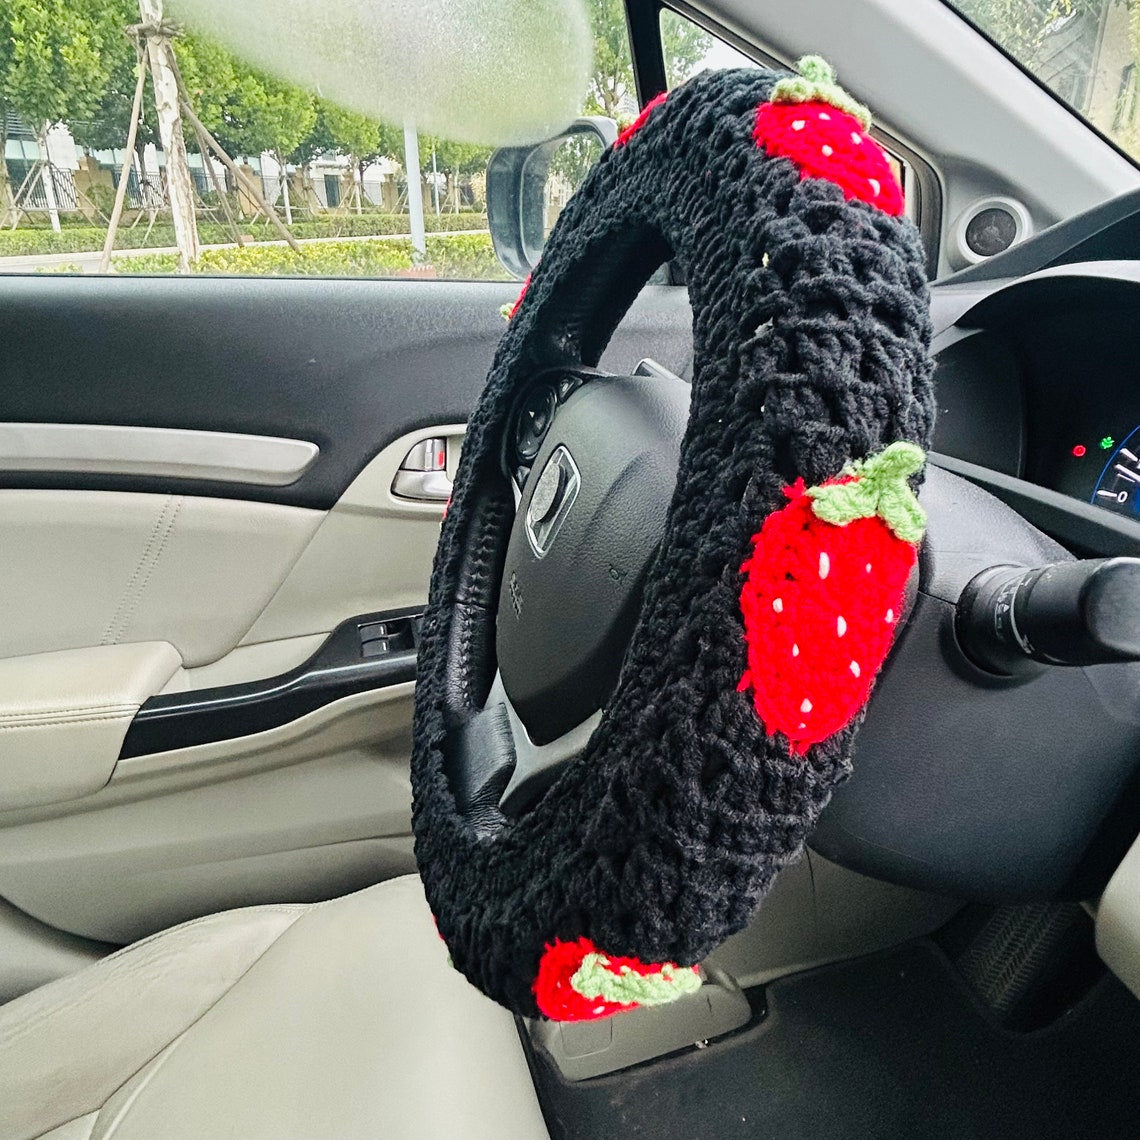 Handmade Crochet Steering Wheel Cover Seat Belt Cover